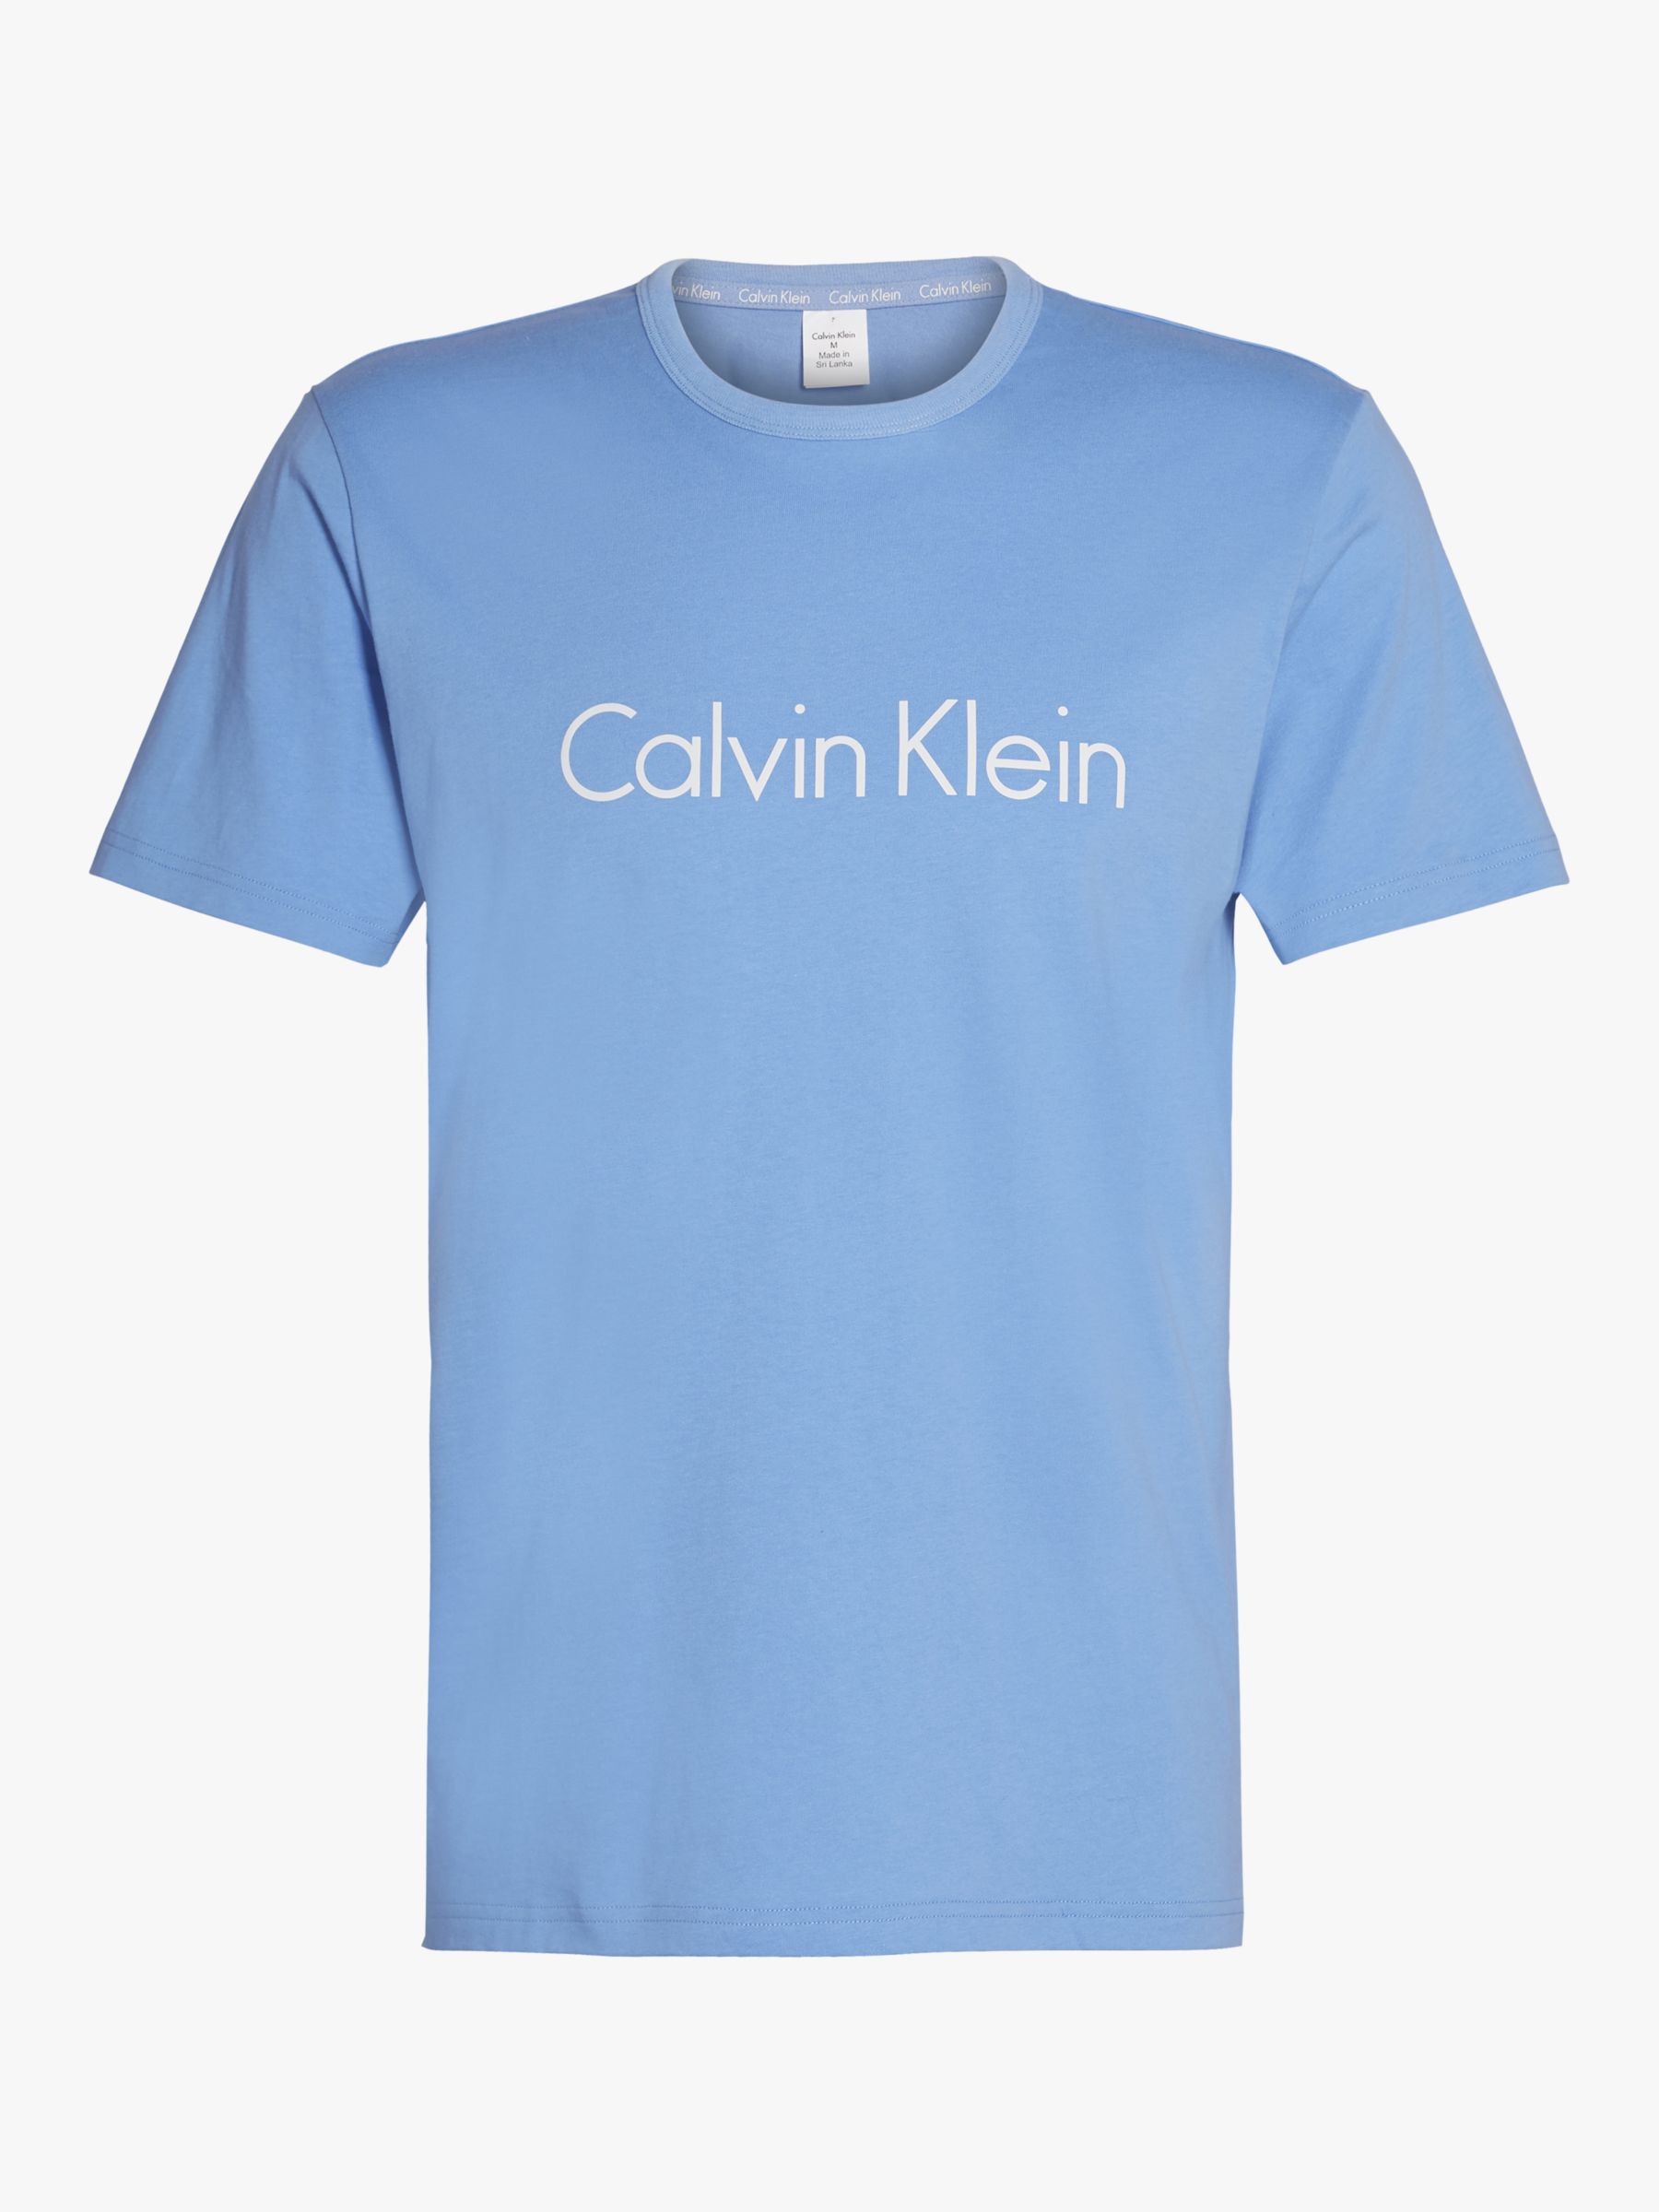 calvin klein light blue t shirt